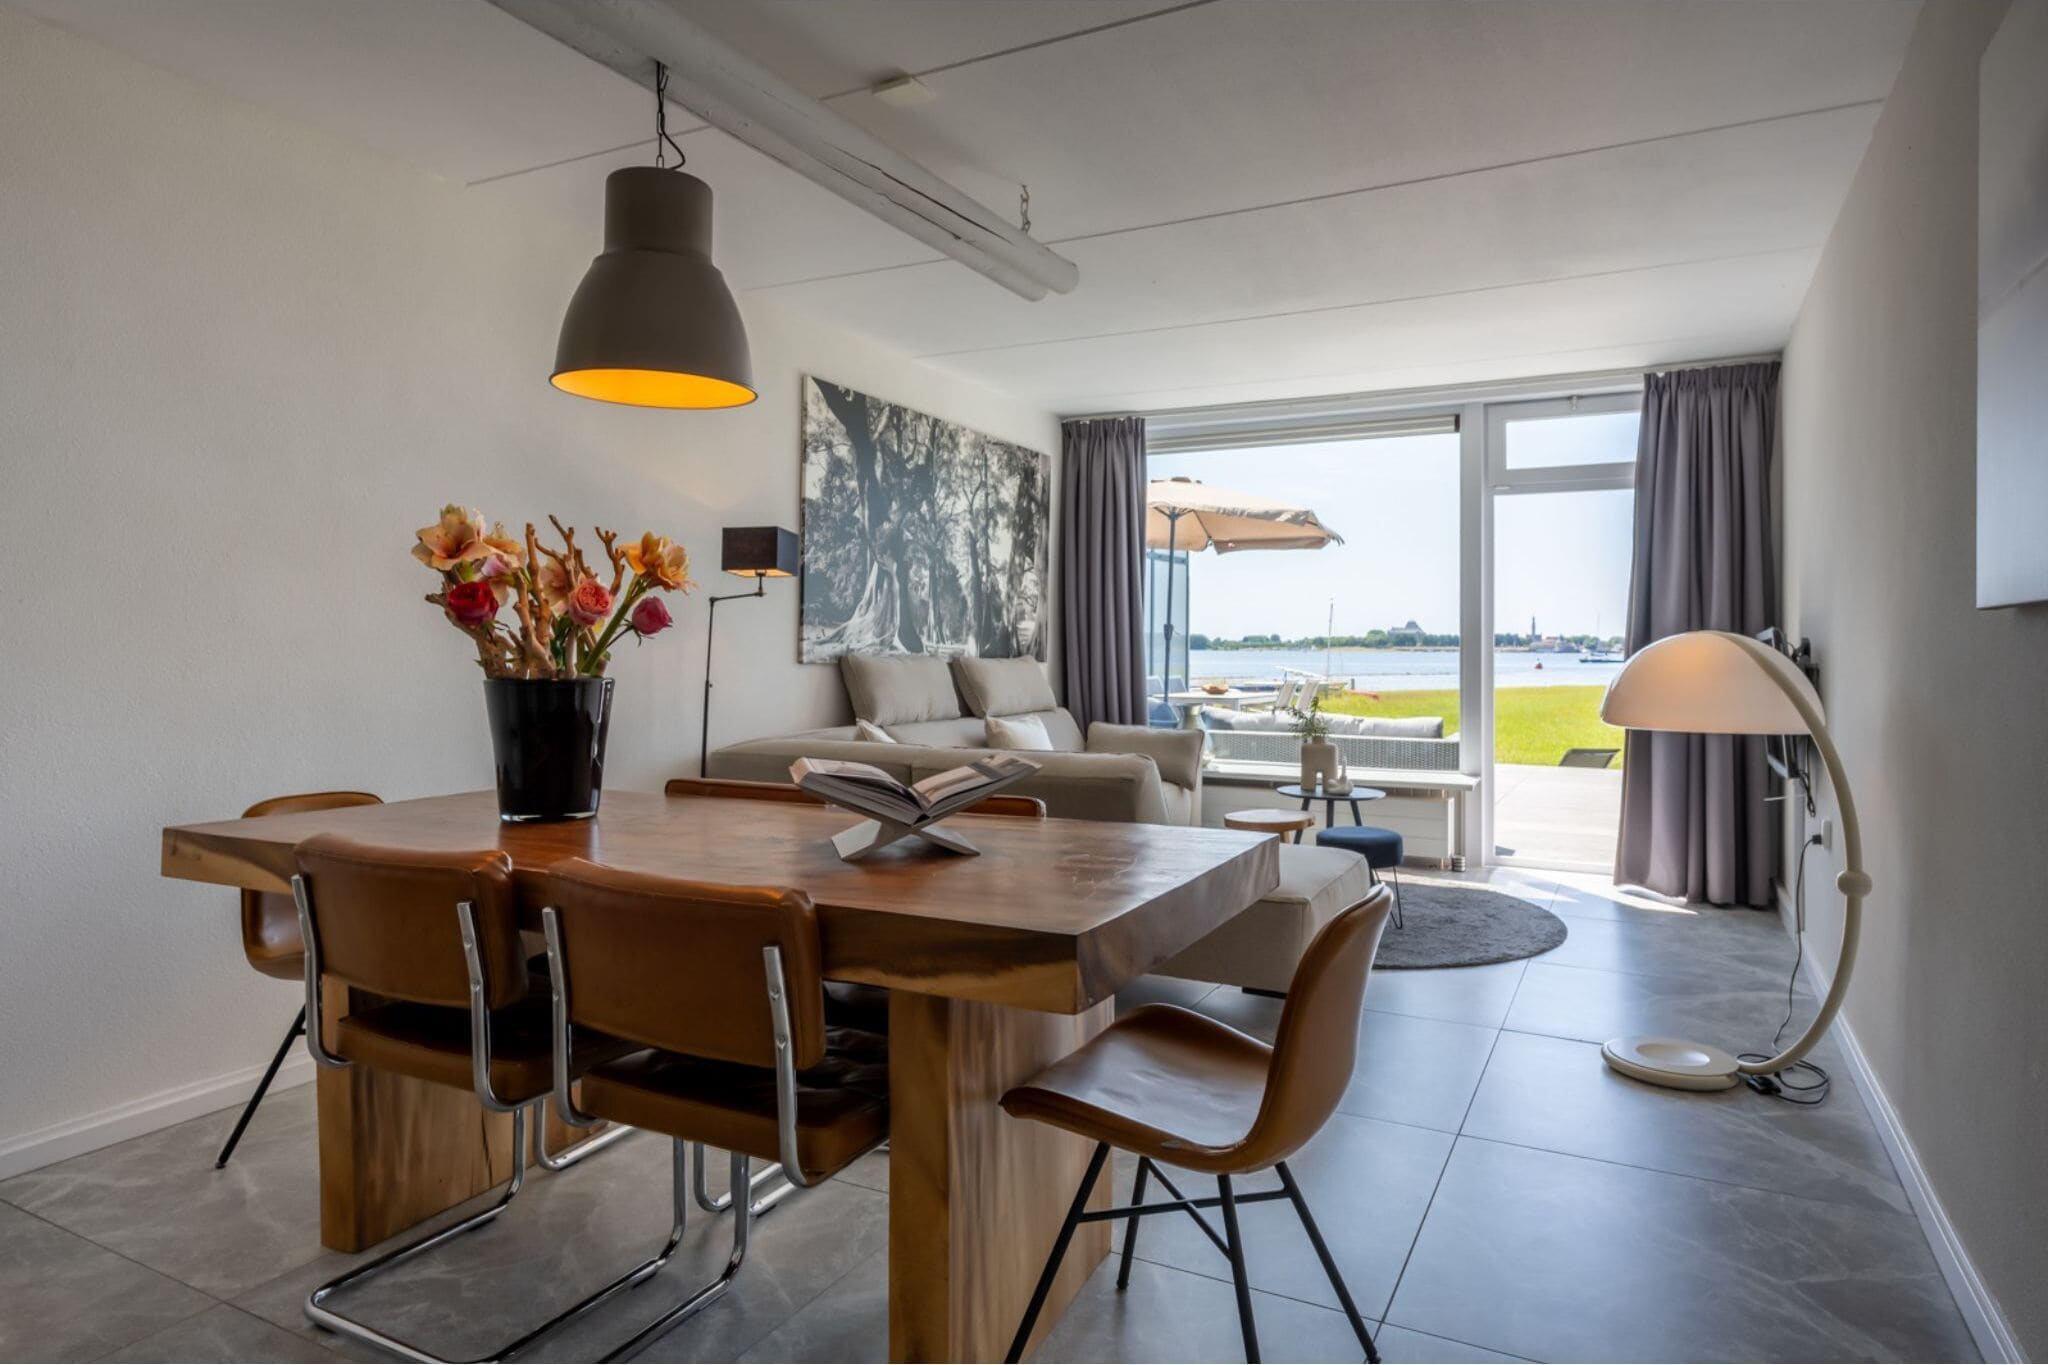 Maison de vacances moderne à Kamperland près de la mer